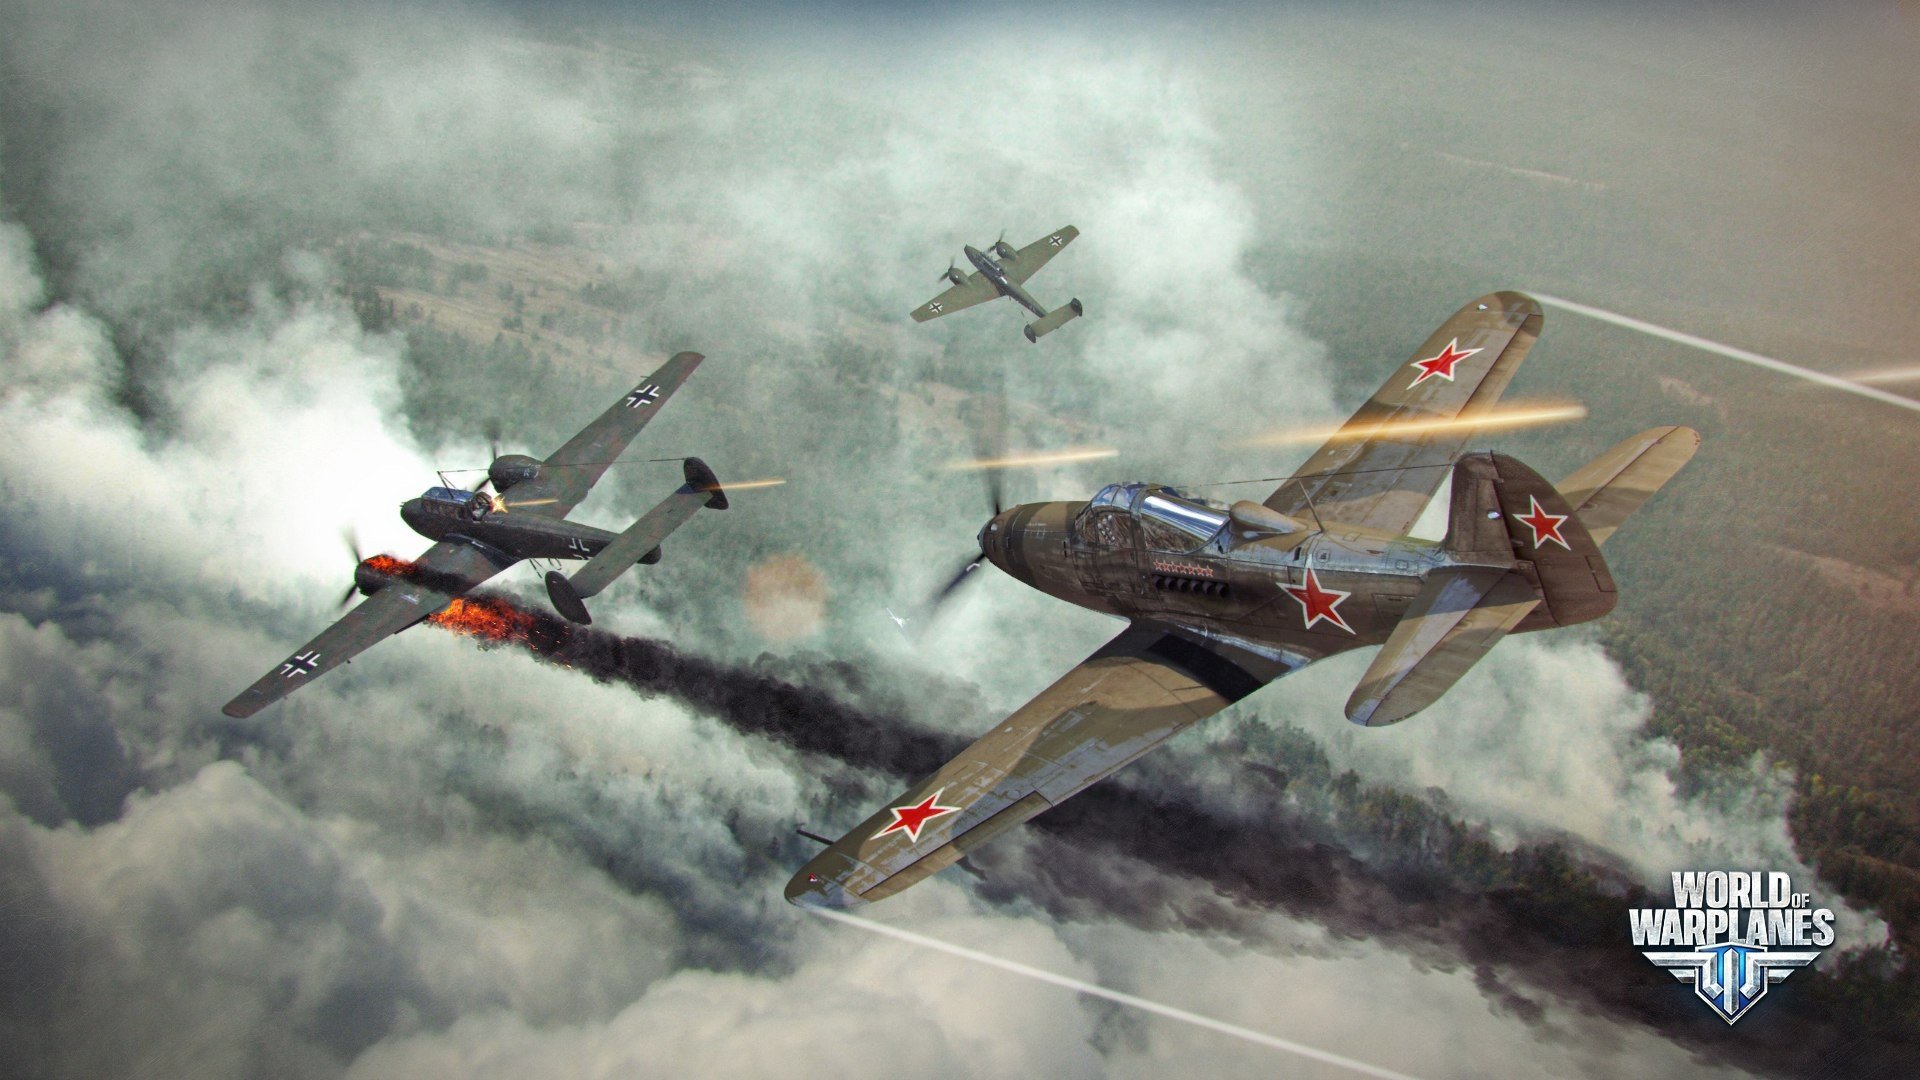 World of Warplanes, Warplanes, Wargaming, Airplane, Bell P 39 Airacobra, Messerschmitt Bf 110, Dogfight Wallpaper